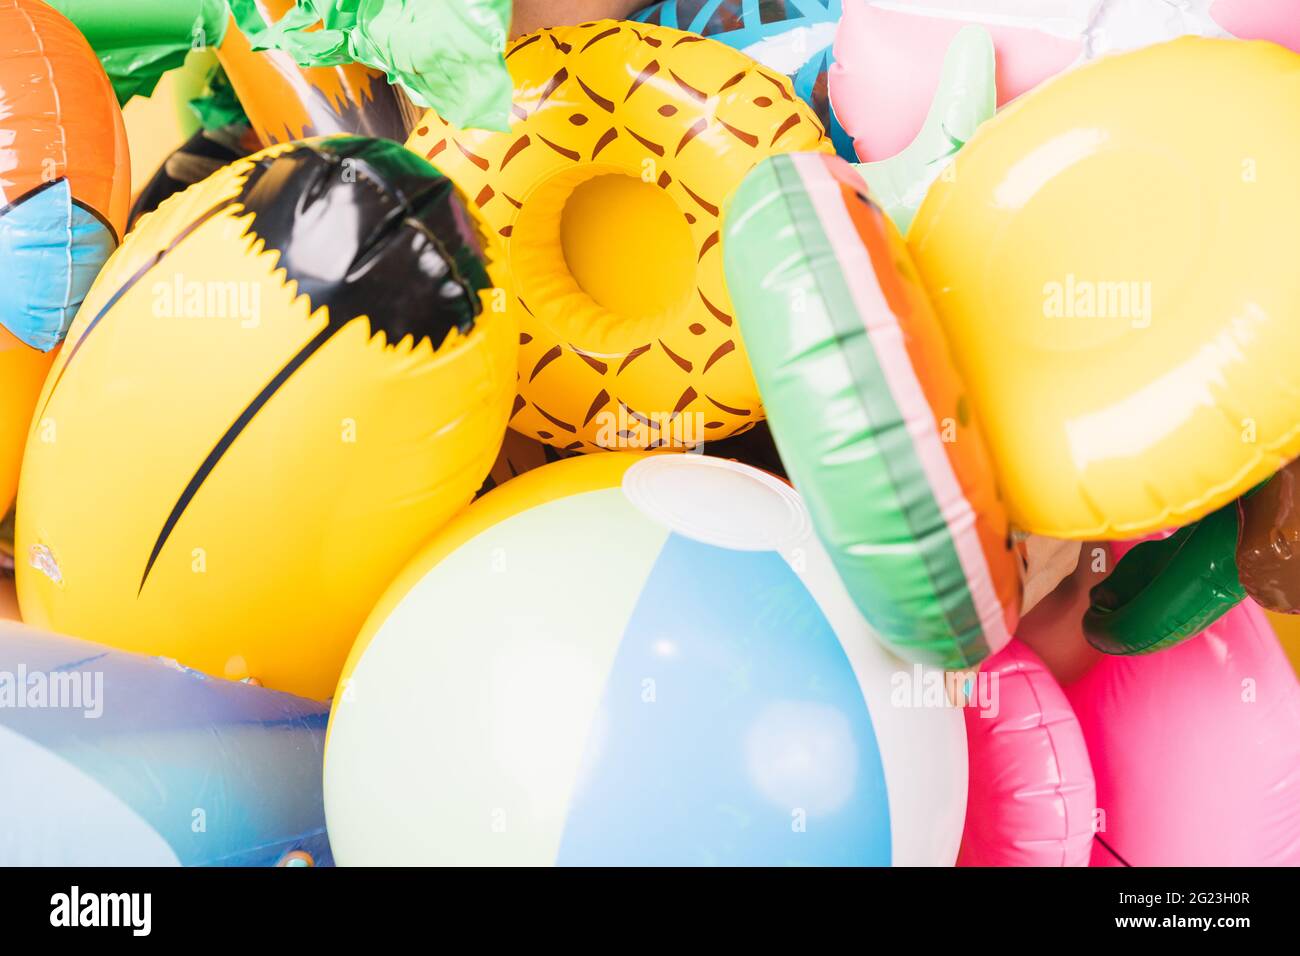 beaucoup de piscines inflatables de différentes formes et couleurs. Illustration 3D Banque D'Images